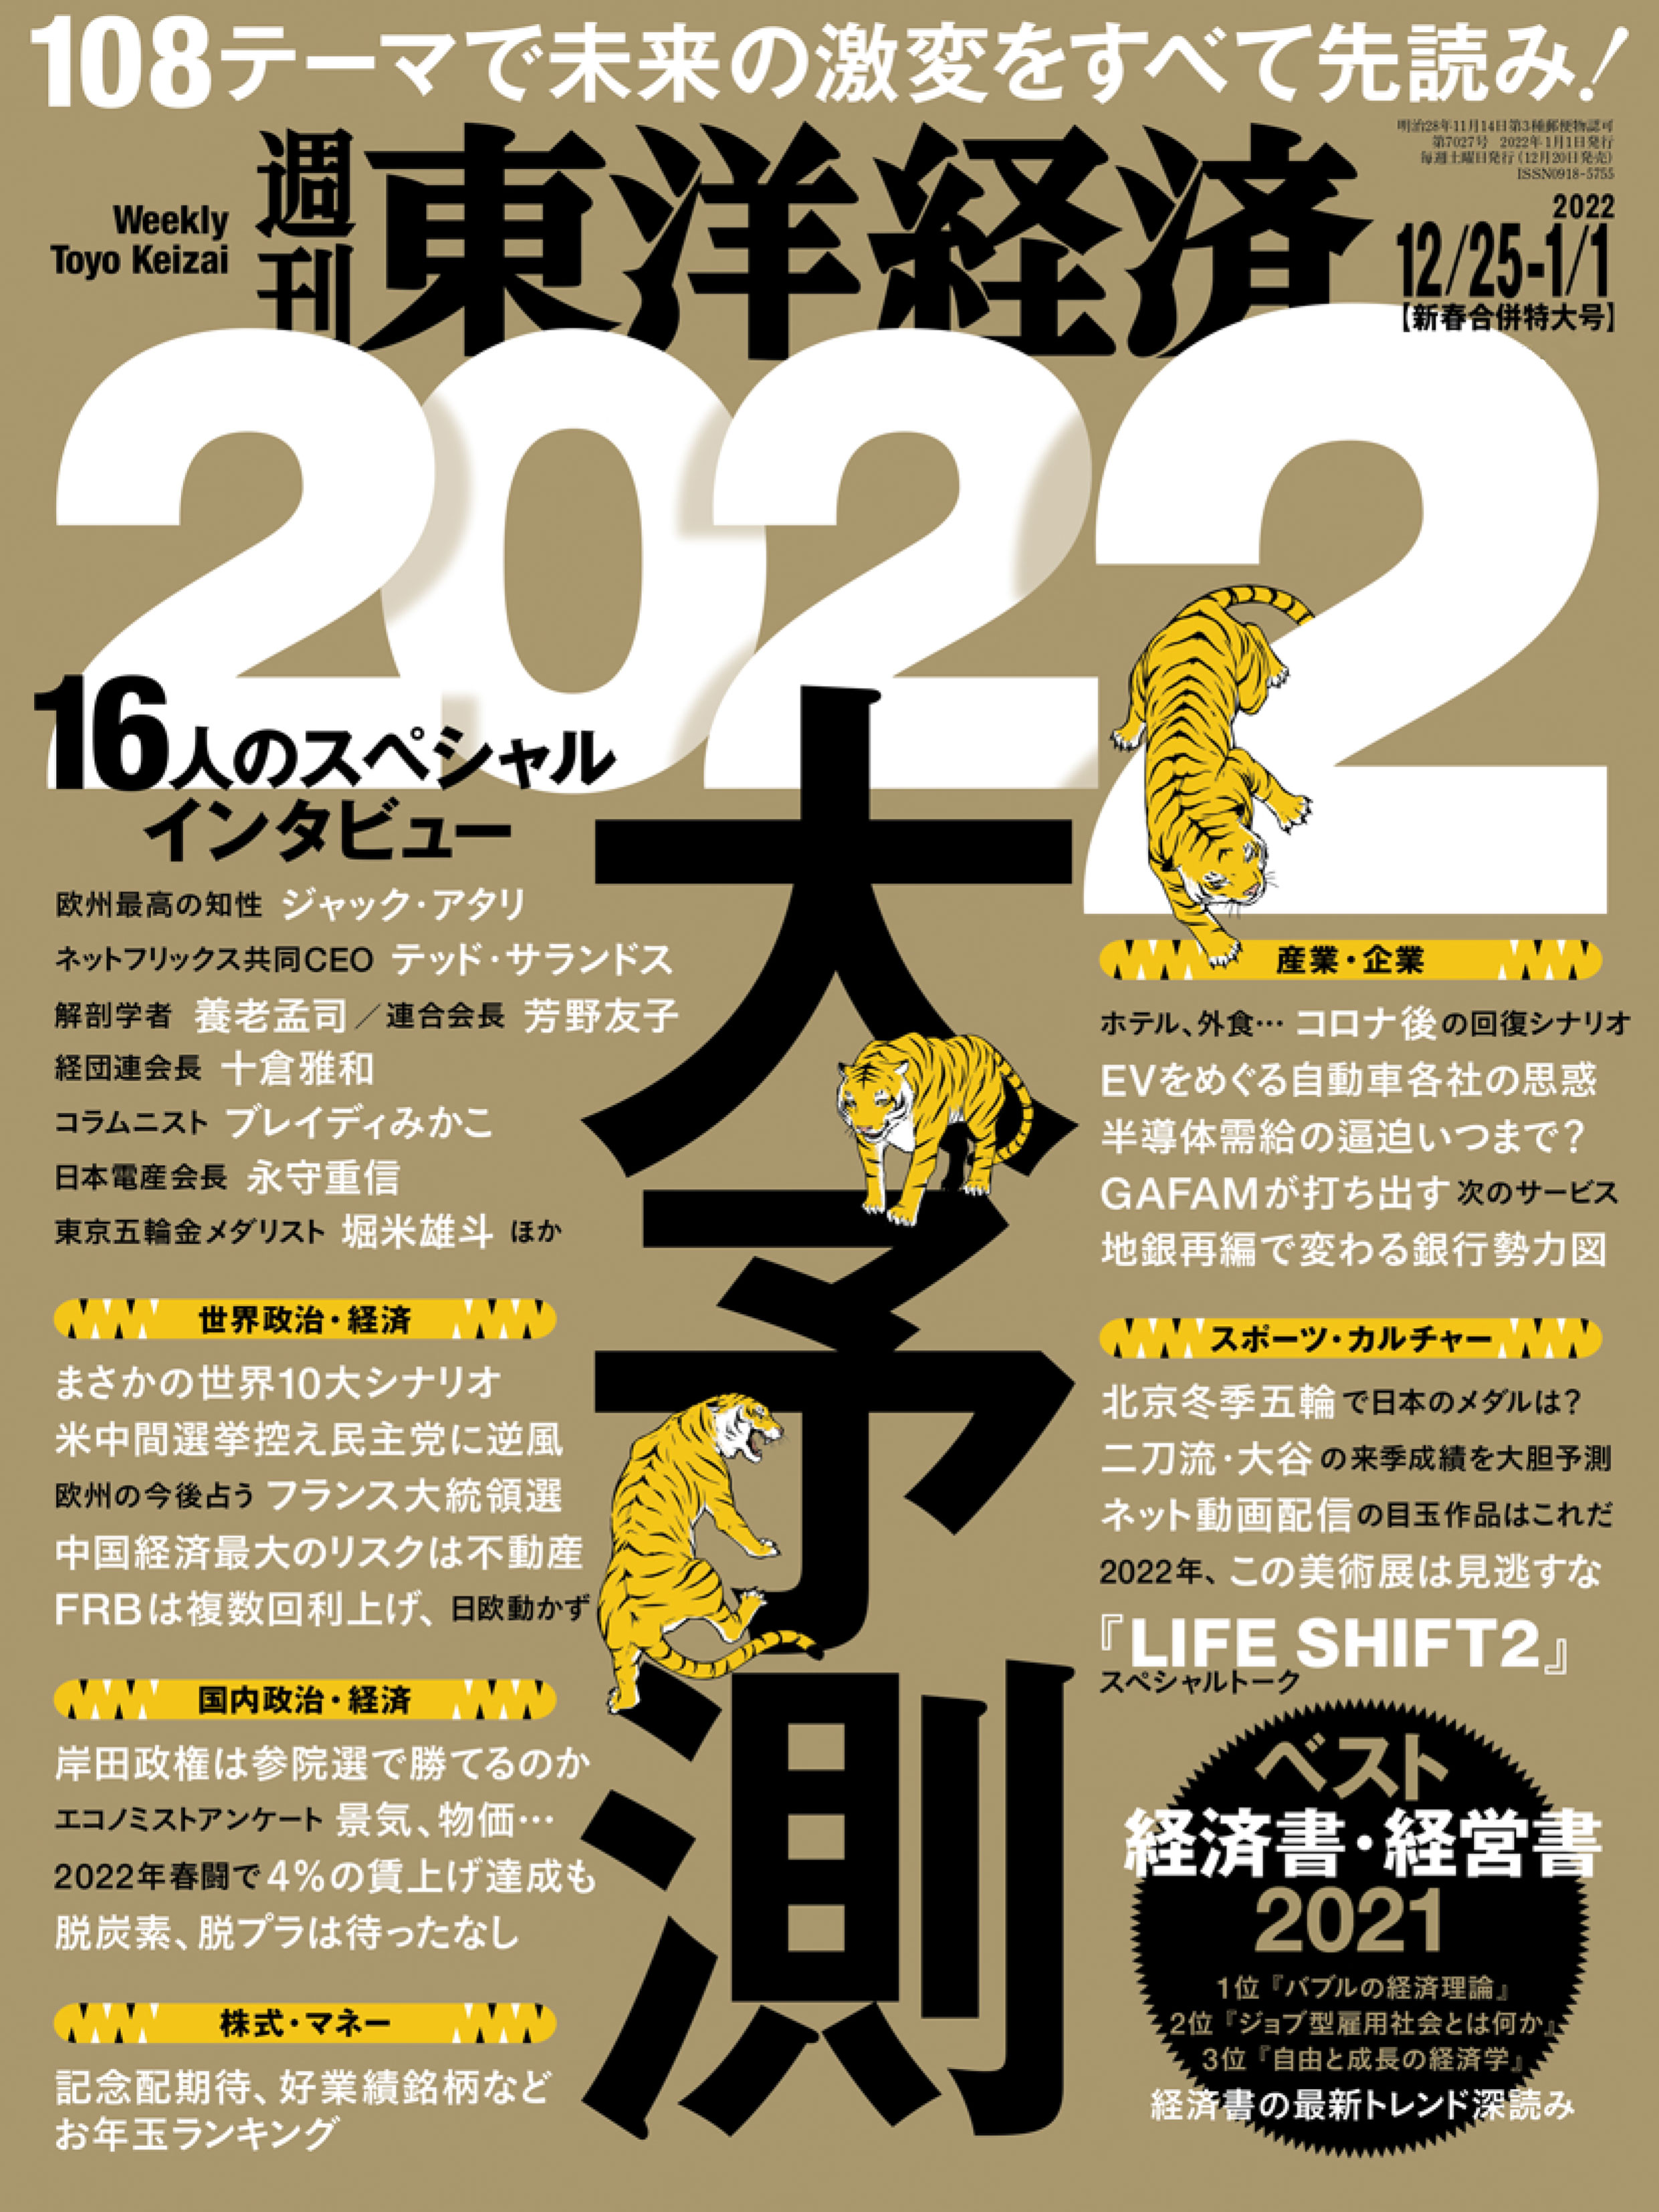 週刊東洋経済 2021/12/25-2022/1/1新春合併特大号 - - 漫画・無料試し